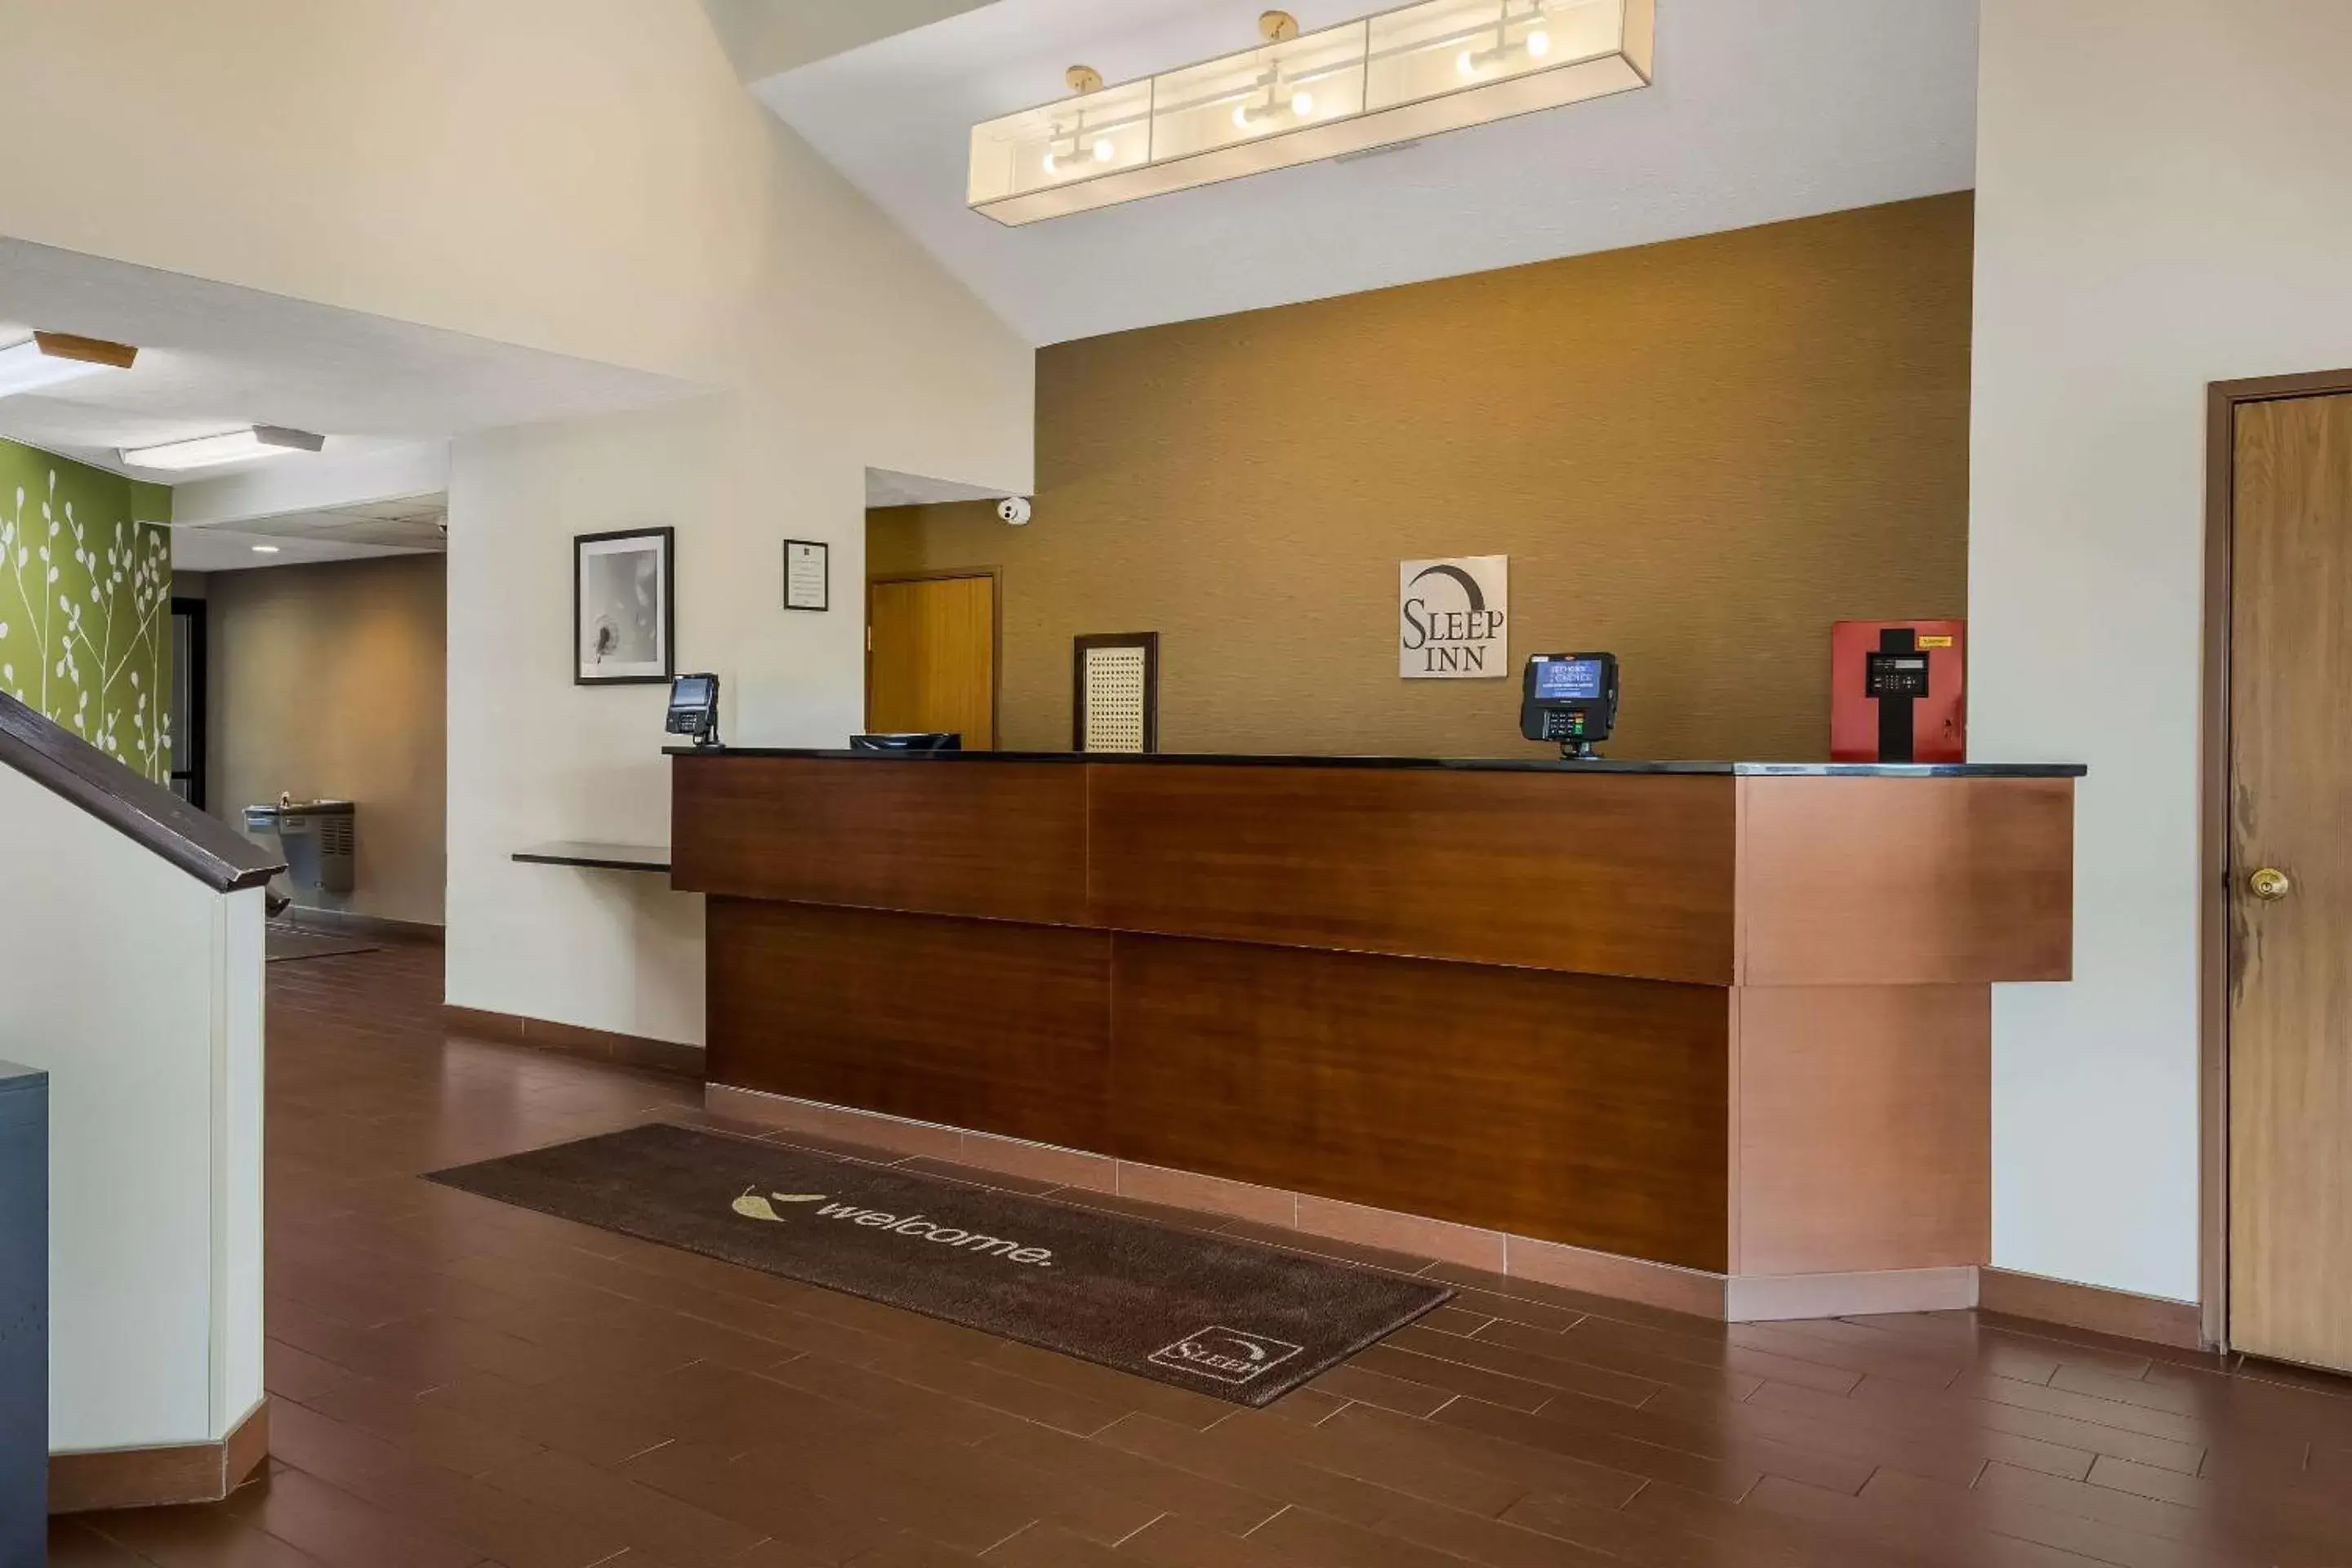 Lobby or reception, Lobby/Reception in Sleep Inn Bolivar